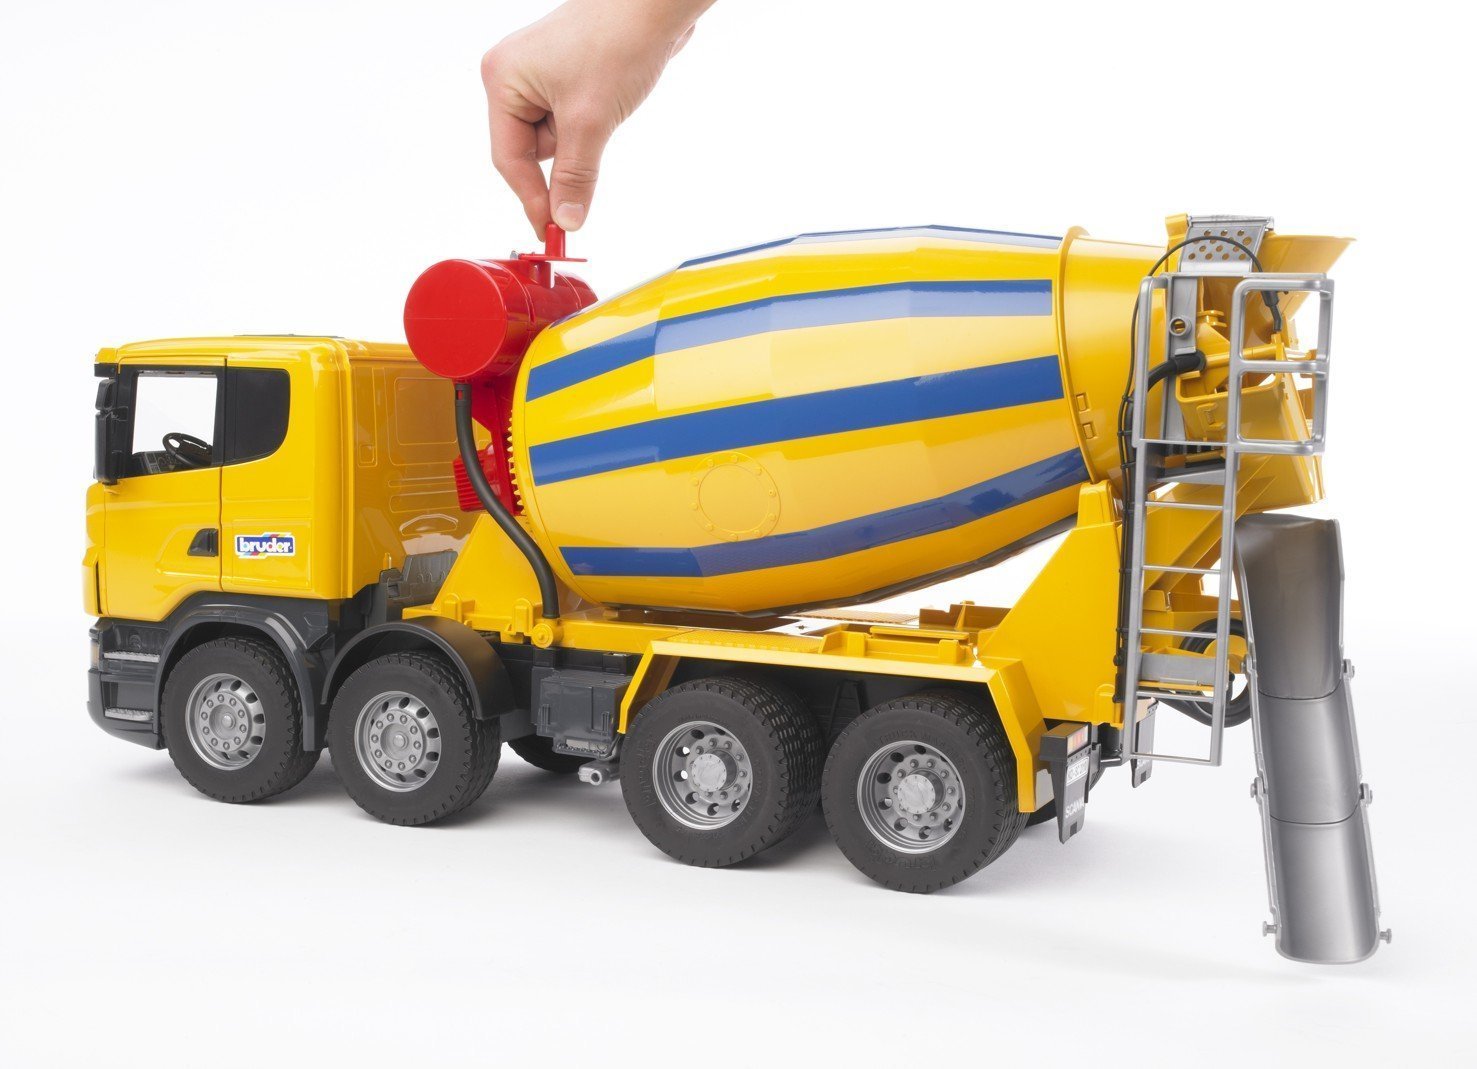 Bruder Cement Mixer Truck | Toy Galaxy